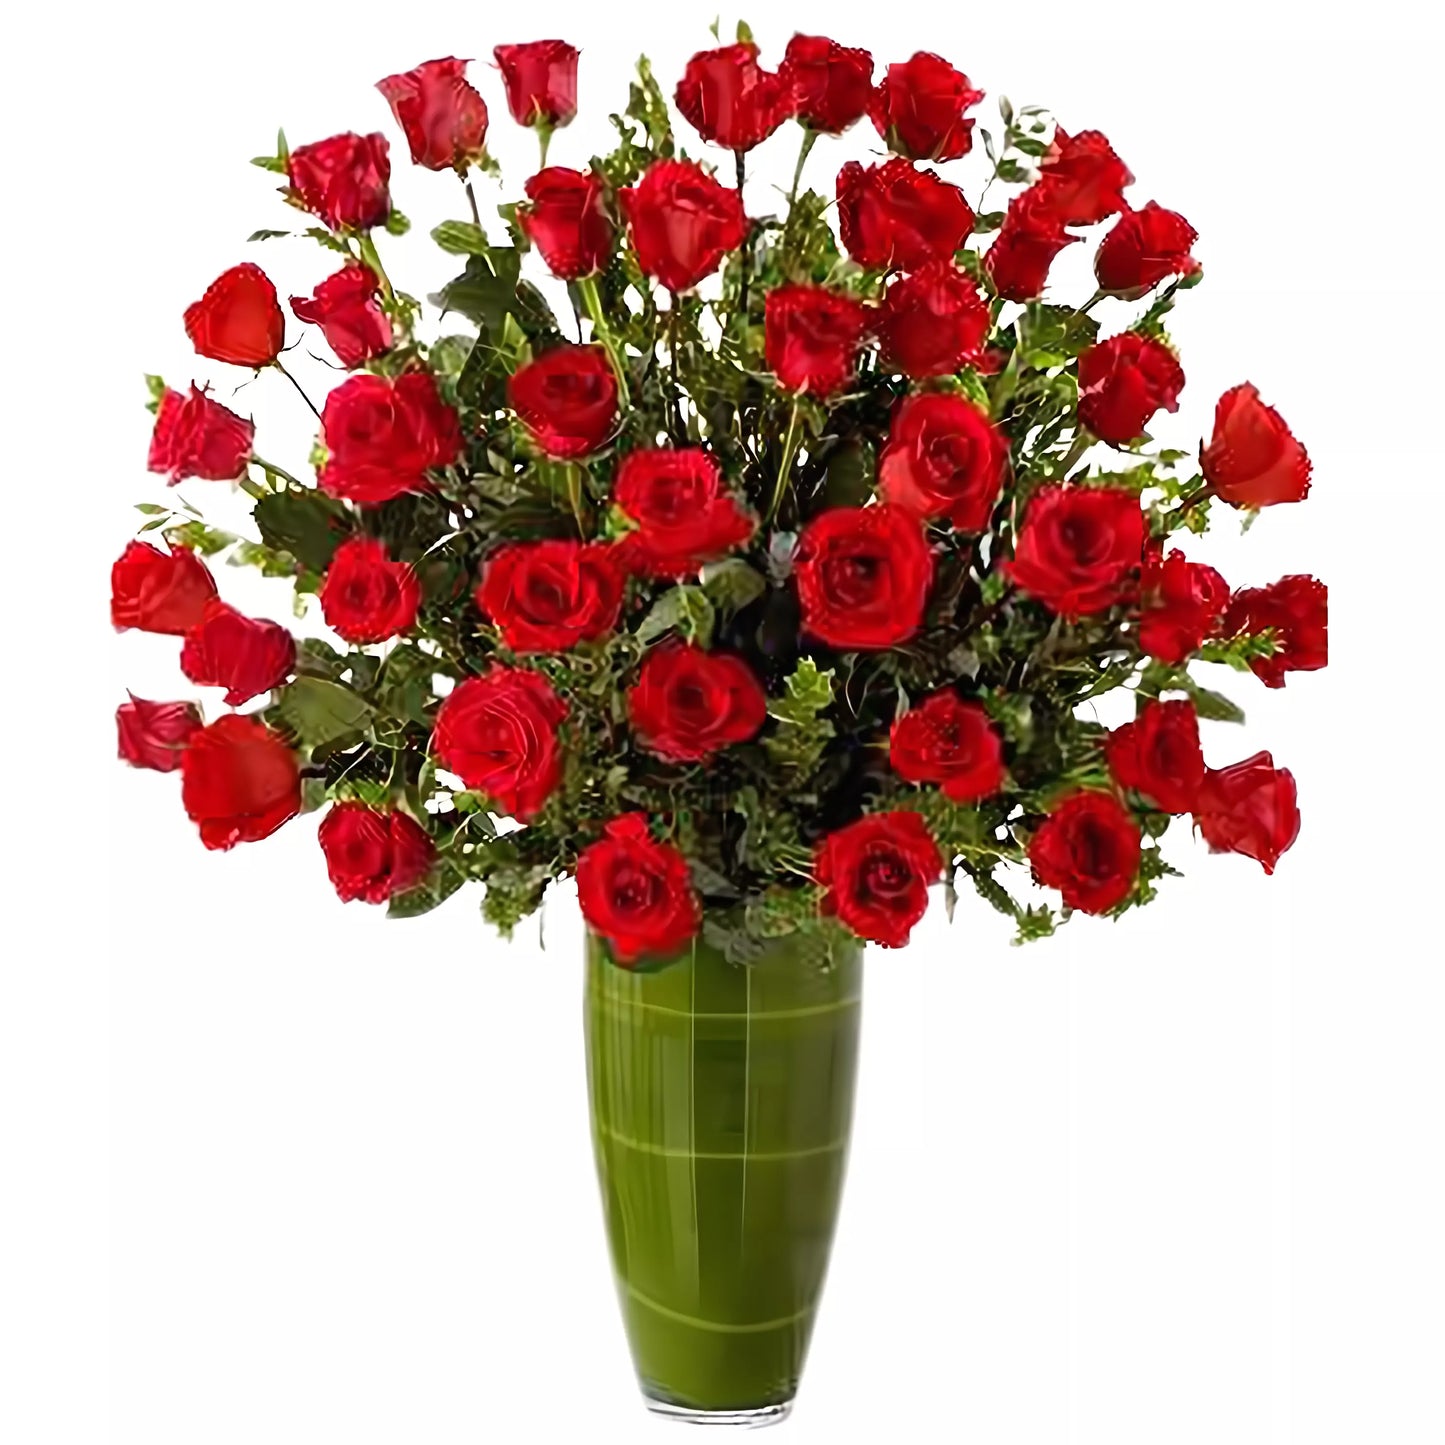 Luxury Rose Bouquet - 24 Premium Long Stem Red Roses